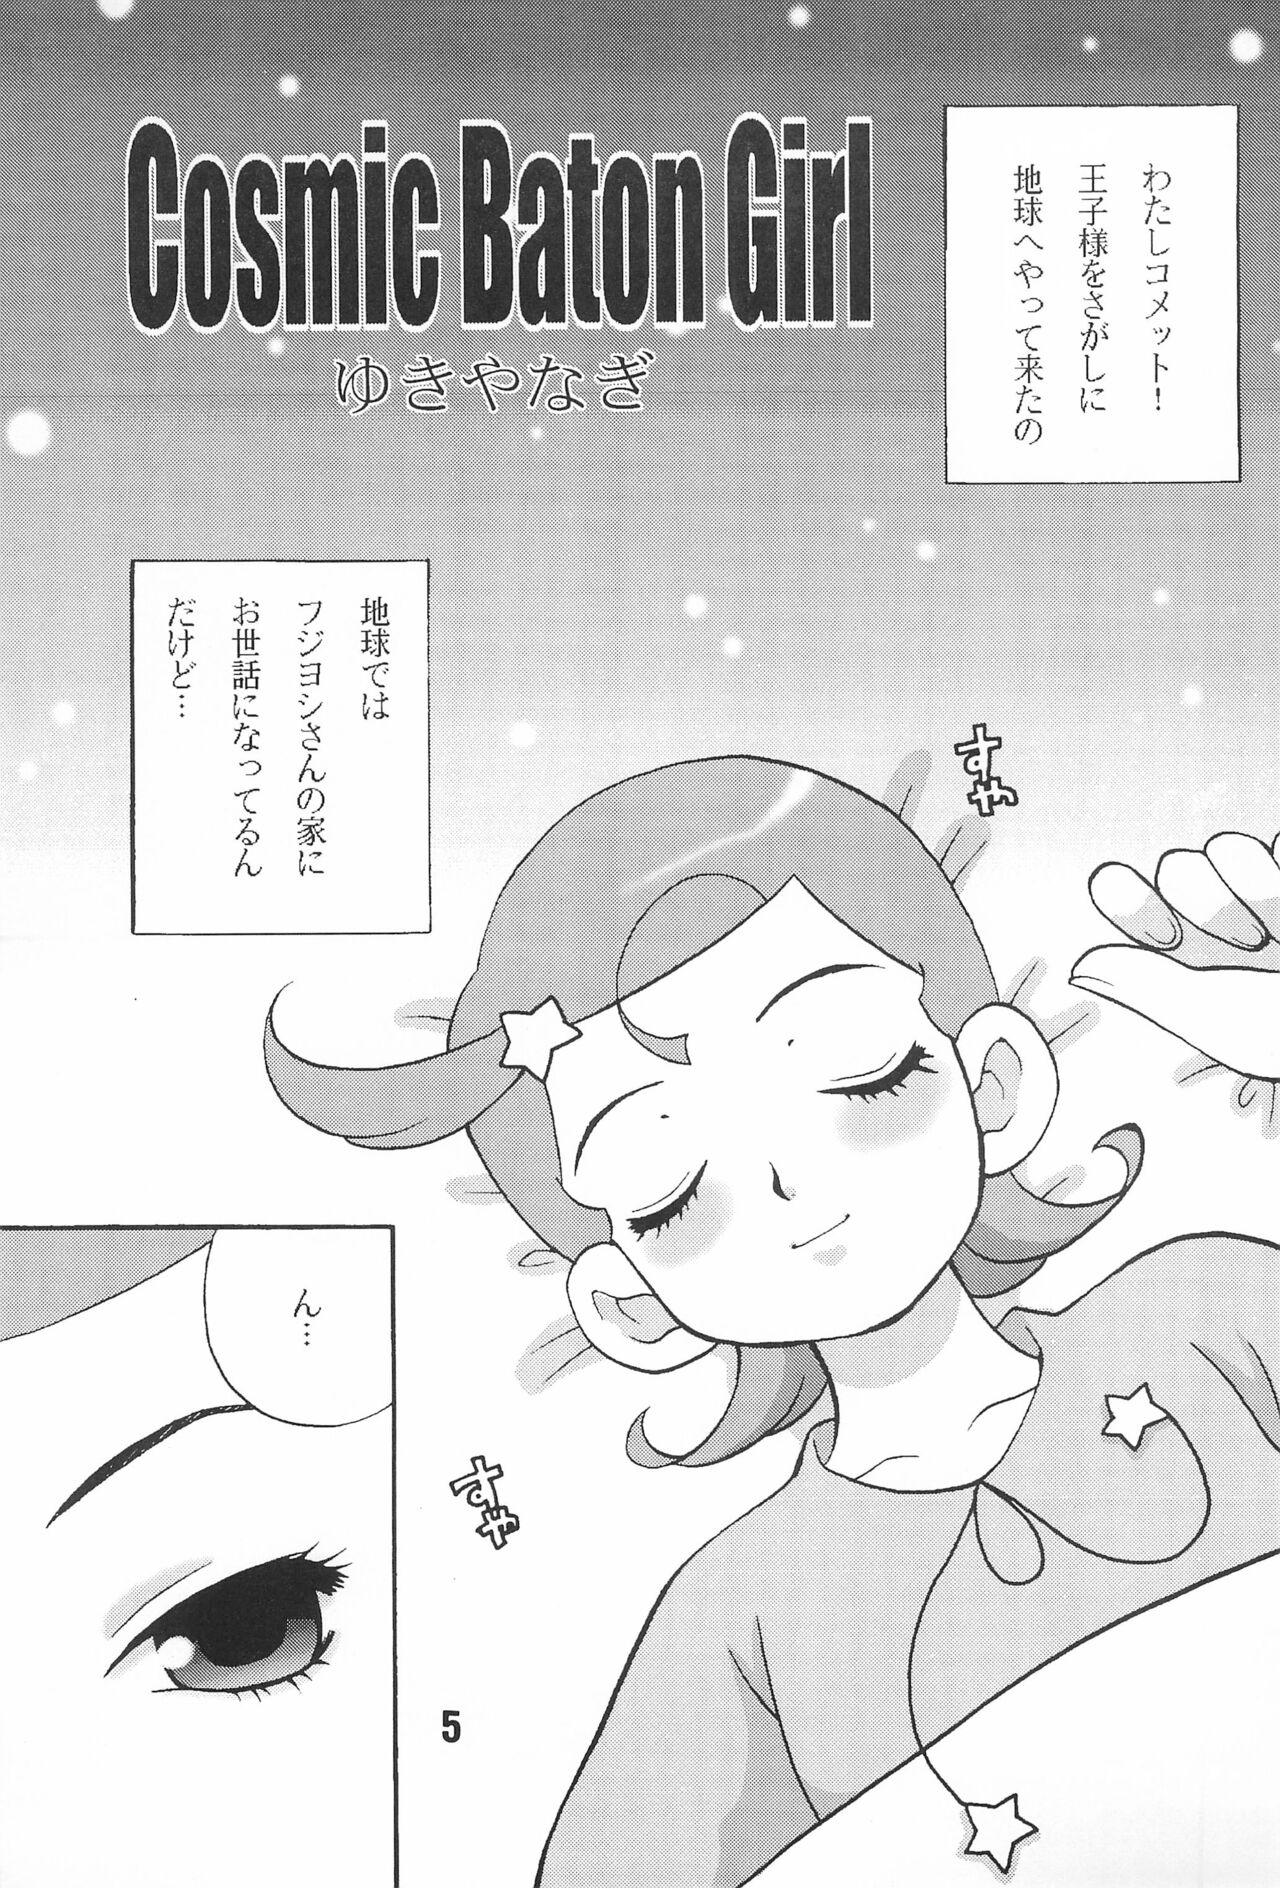 Gayhardcore Yukiyanagi no Hon 3 - Cosmic baton girl comet san Hand - Page 5